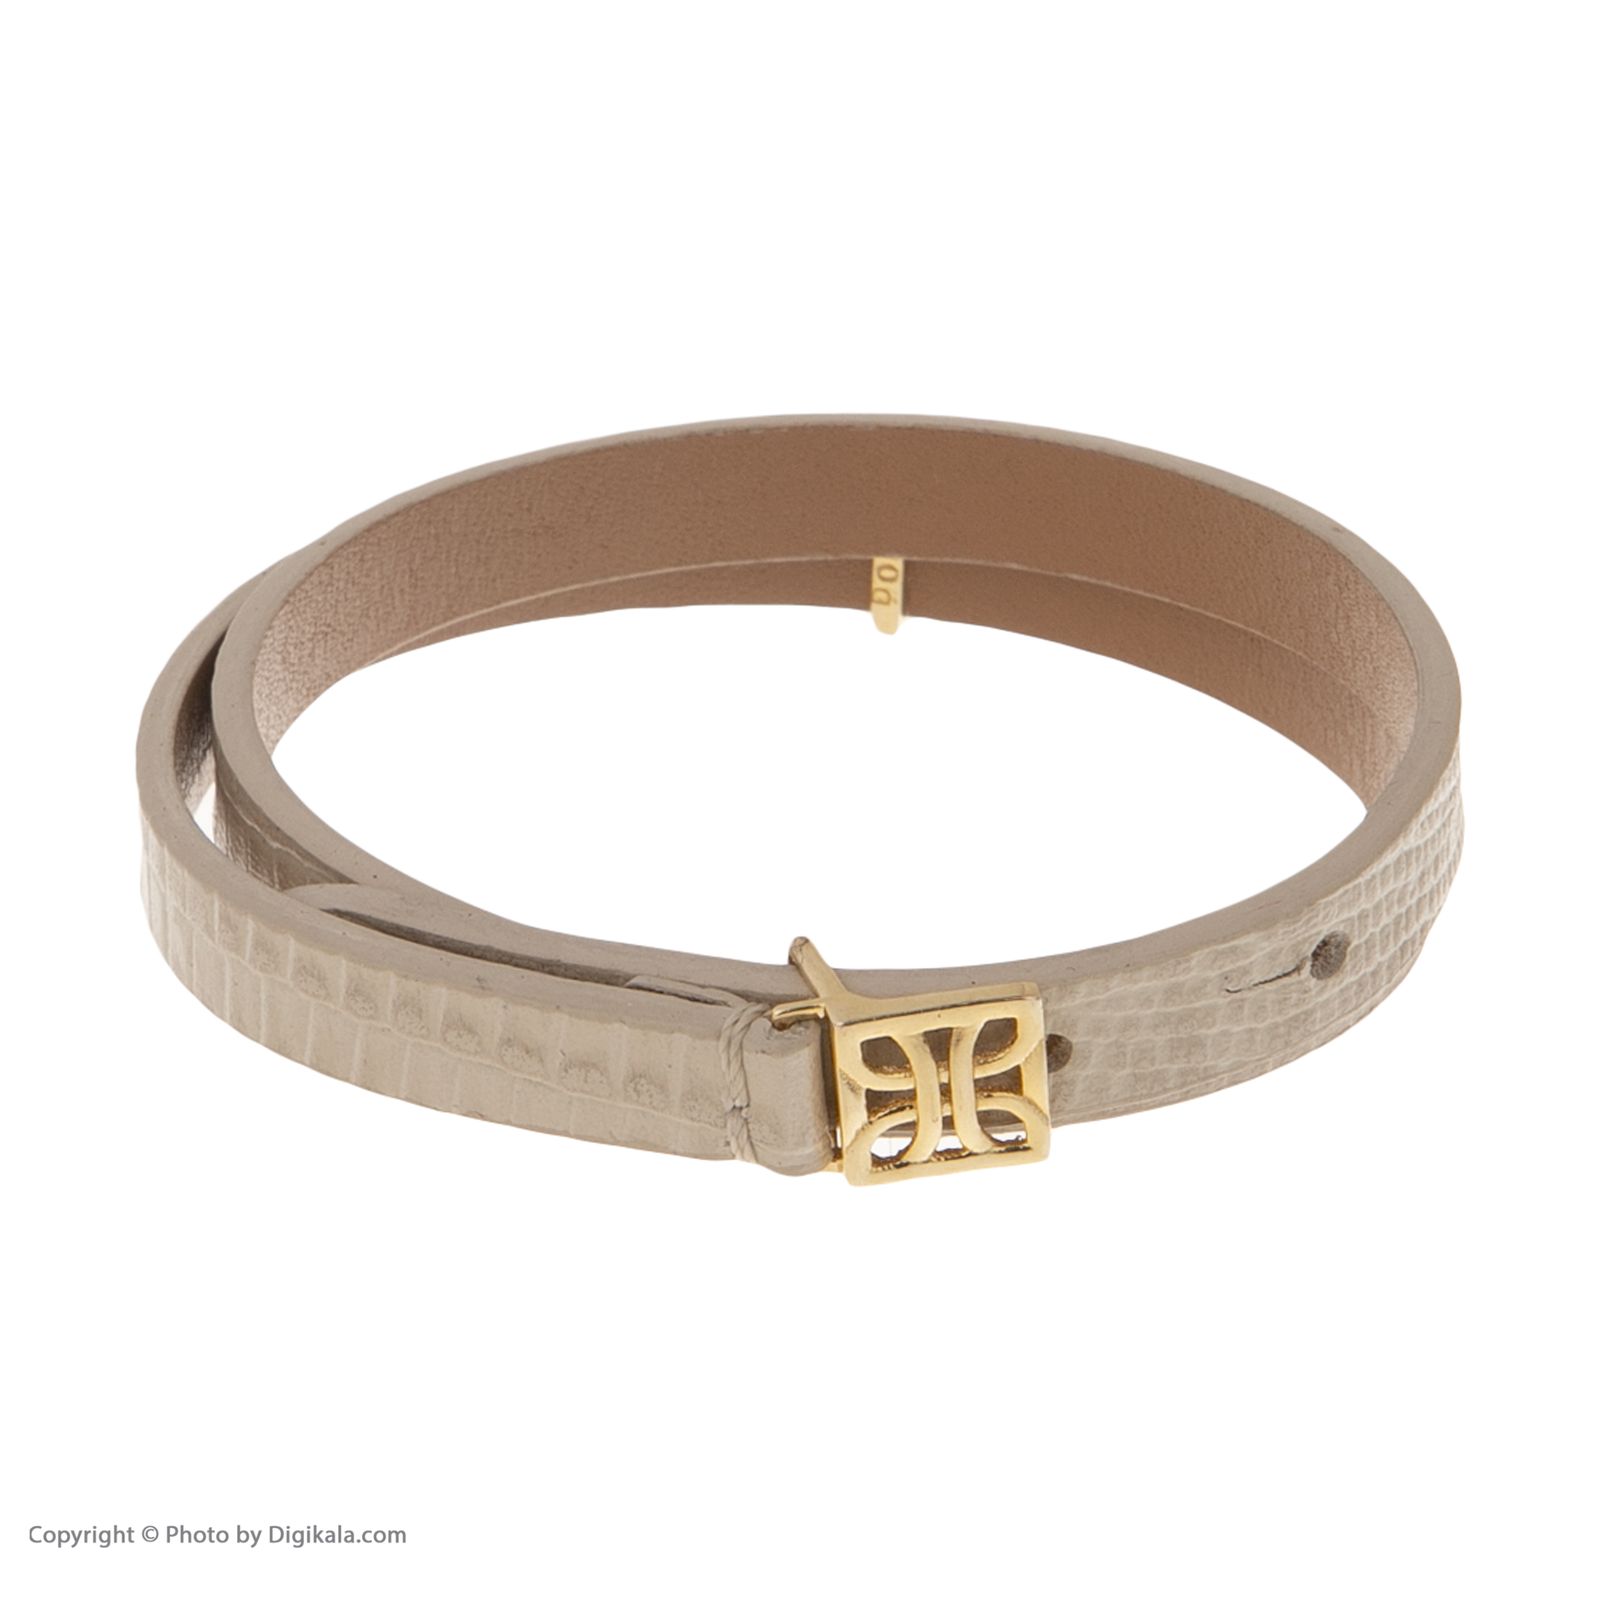 دستبند طلا 18 عیار زنانه درسا مدل 2364-2